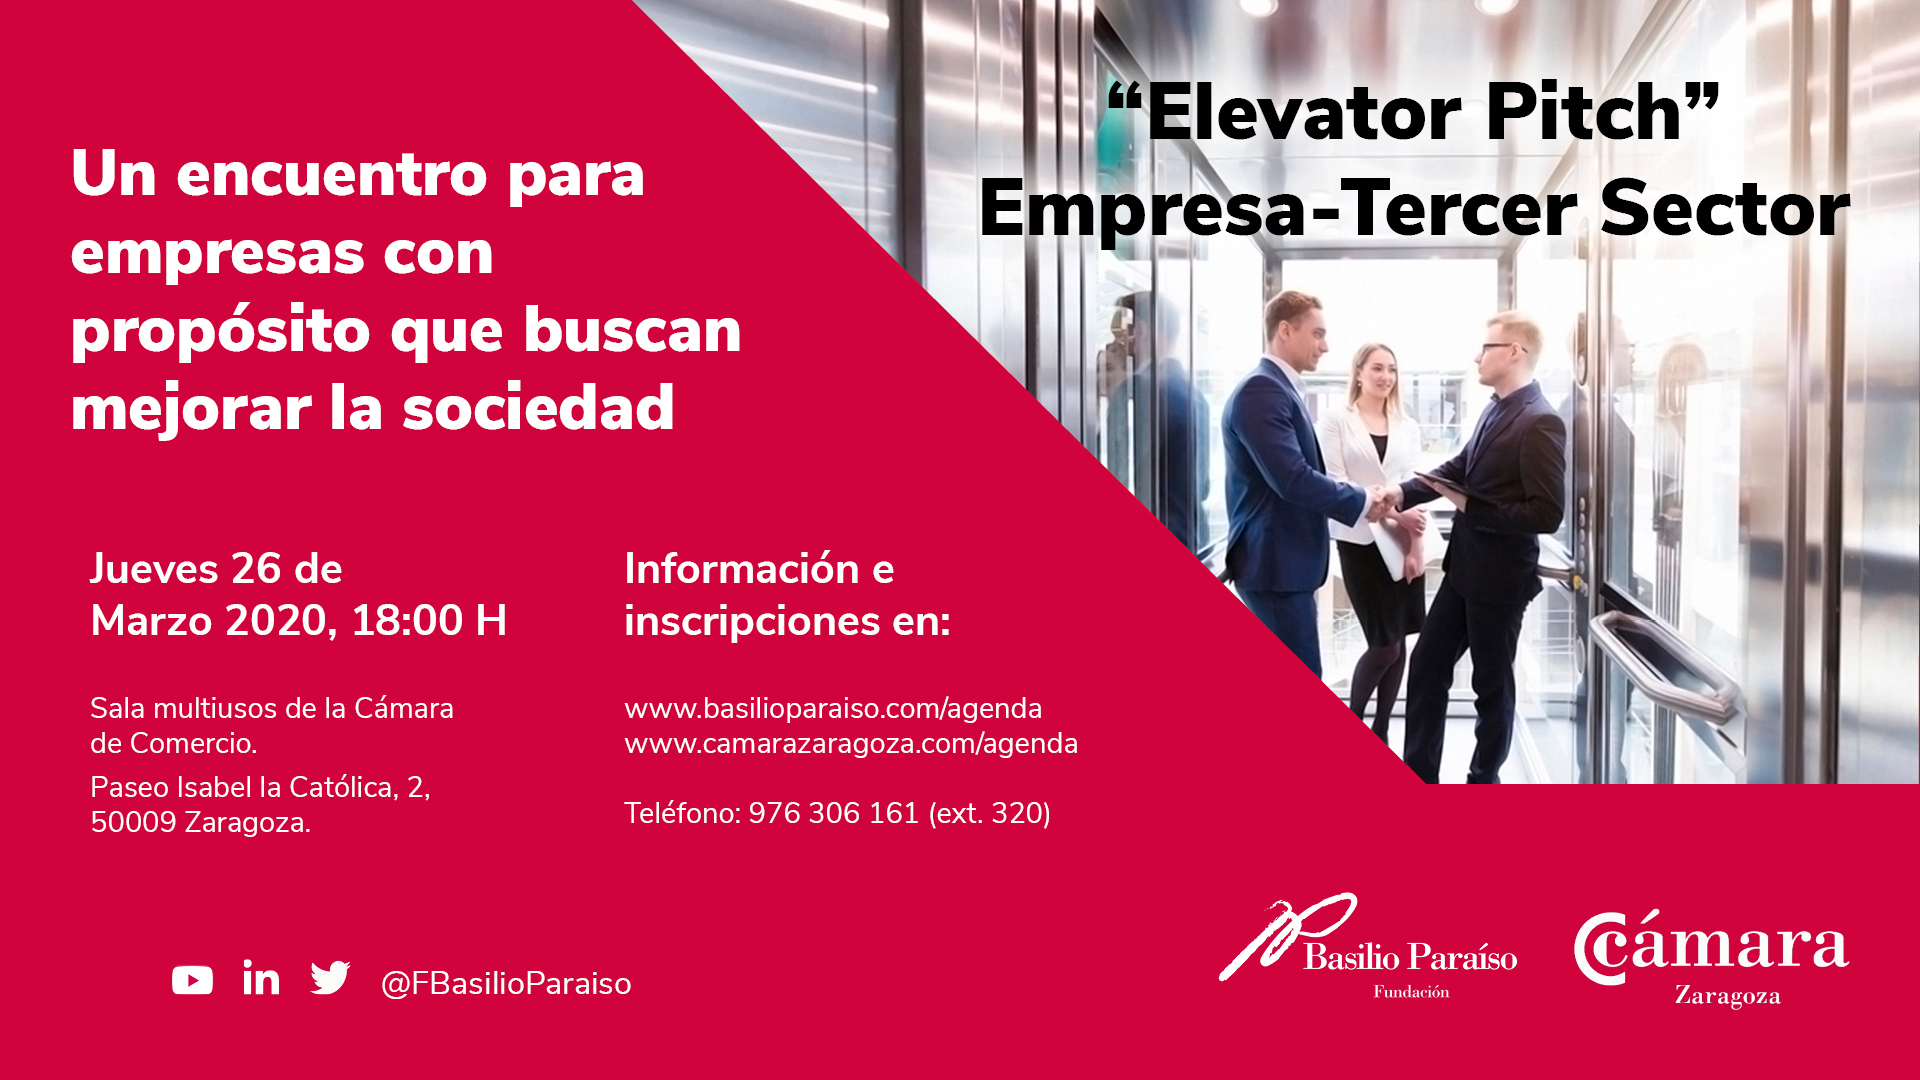 Elevator Pitch. Empresas Tercer Sector